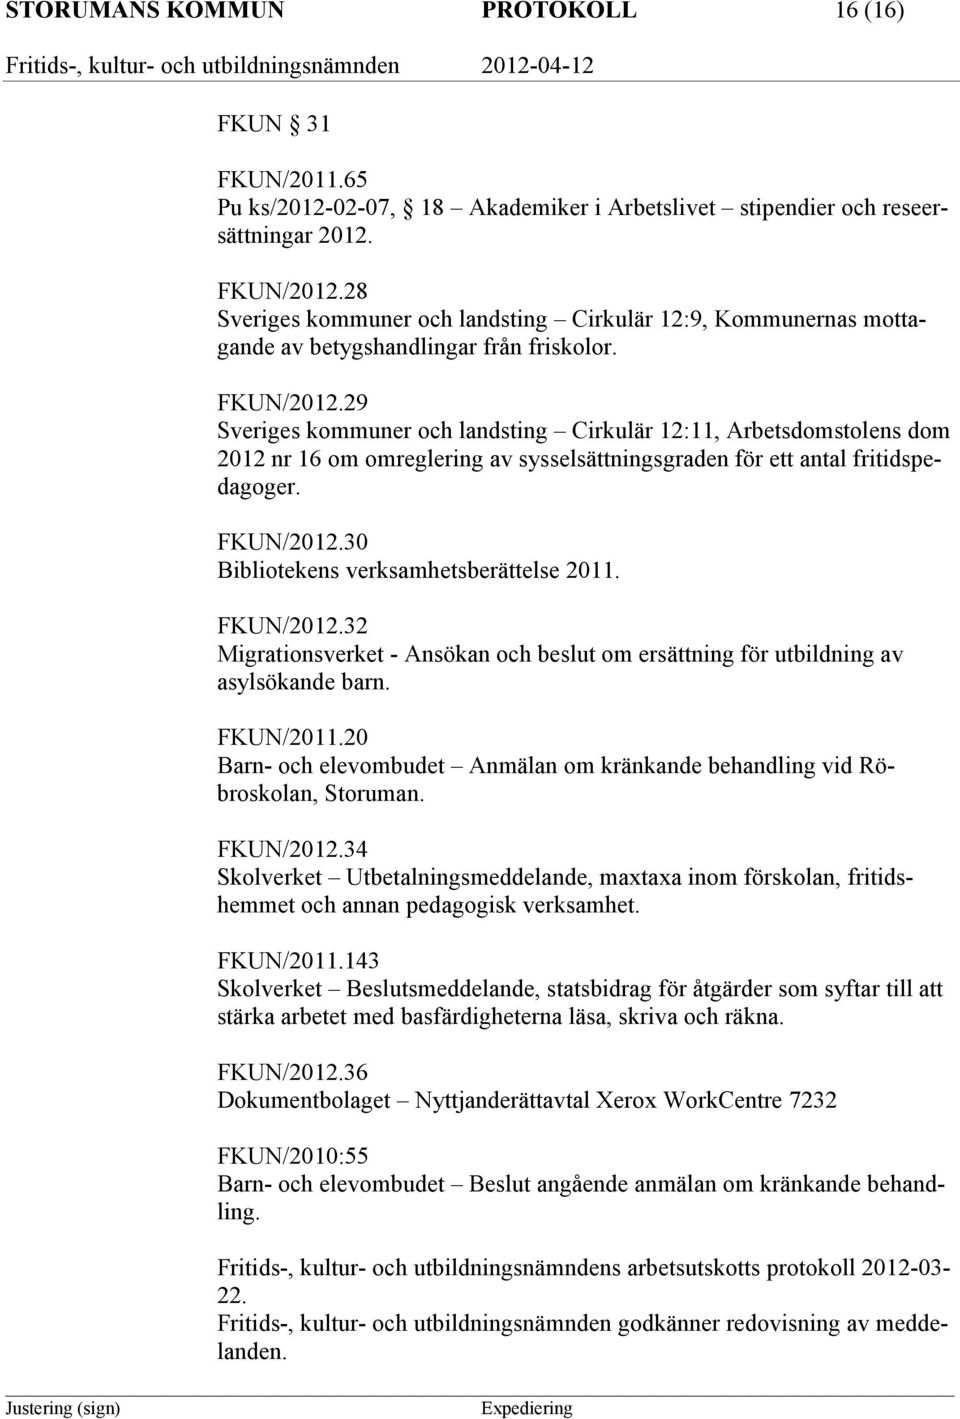 29 Sveriges kommuner och landsting Cirkulär 12:11, Arbetsdomstolens dom 2012 nr 16 om omreglering av sysselsättningsgraden för ett antal fritidspedagoger. FKUN/2012.